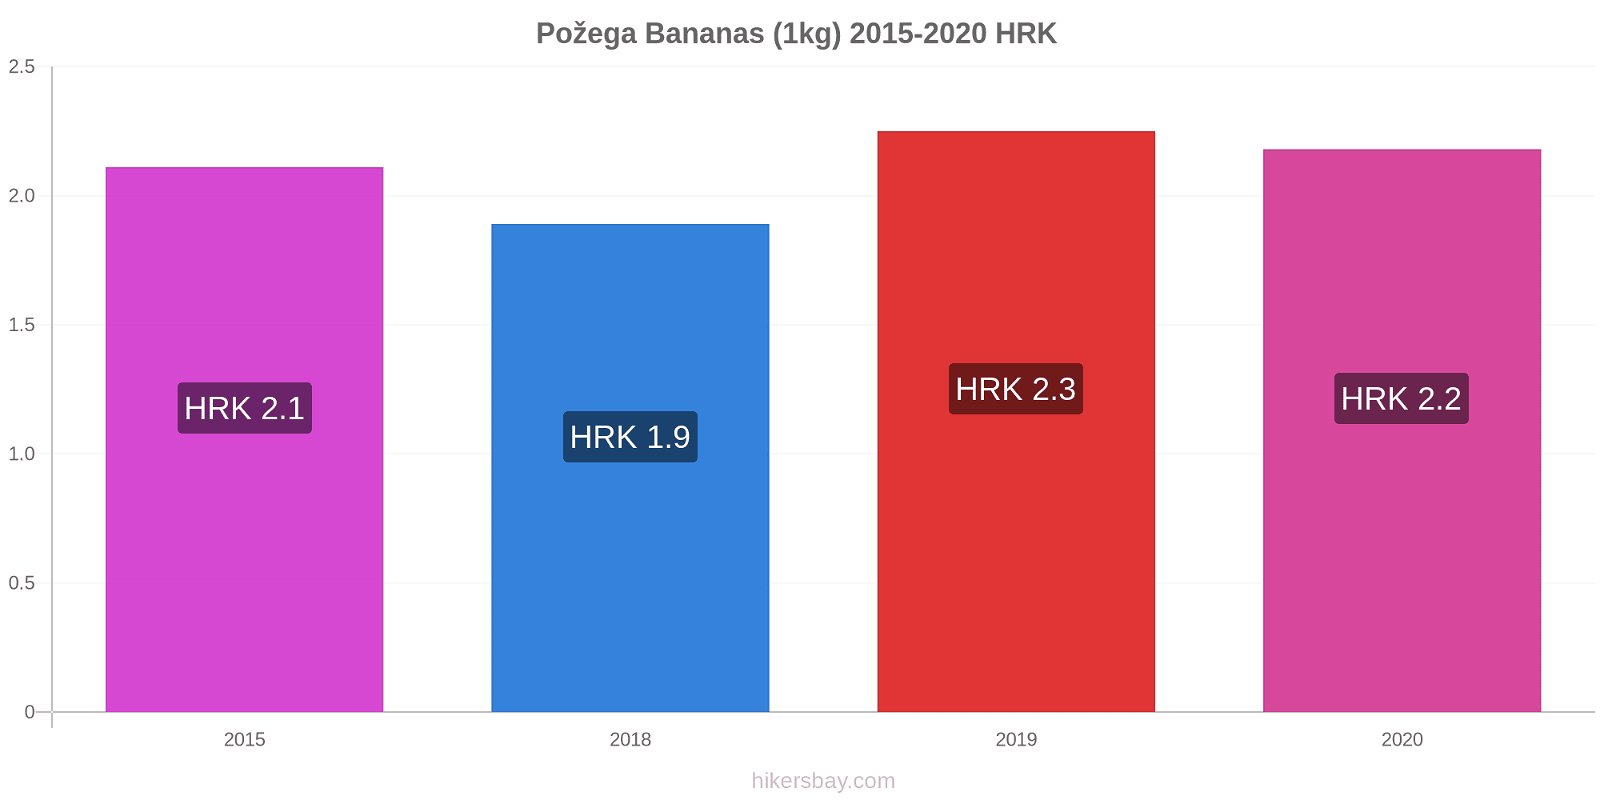 Požega variação de preço Banana (1kg) hikersbay.com